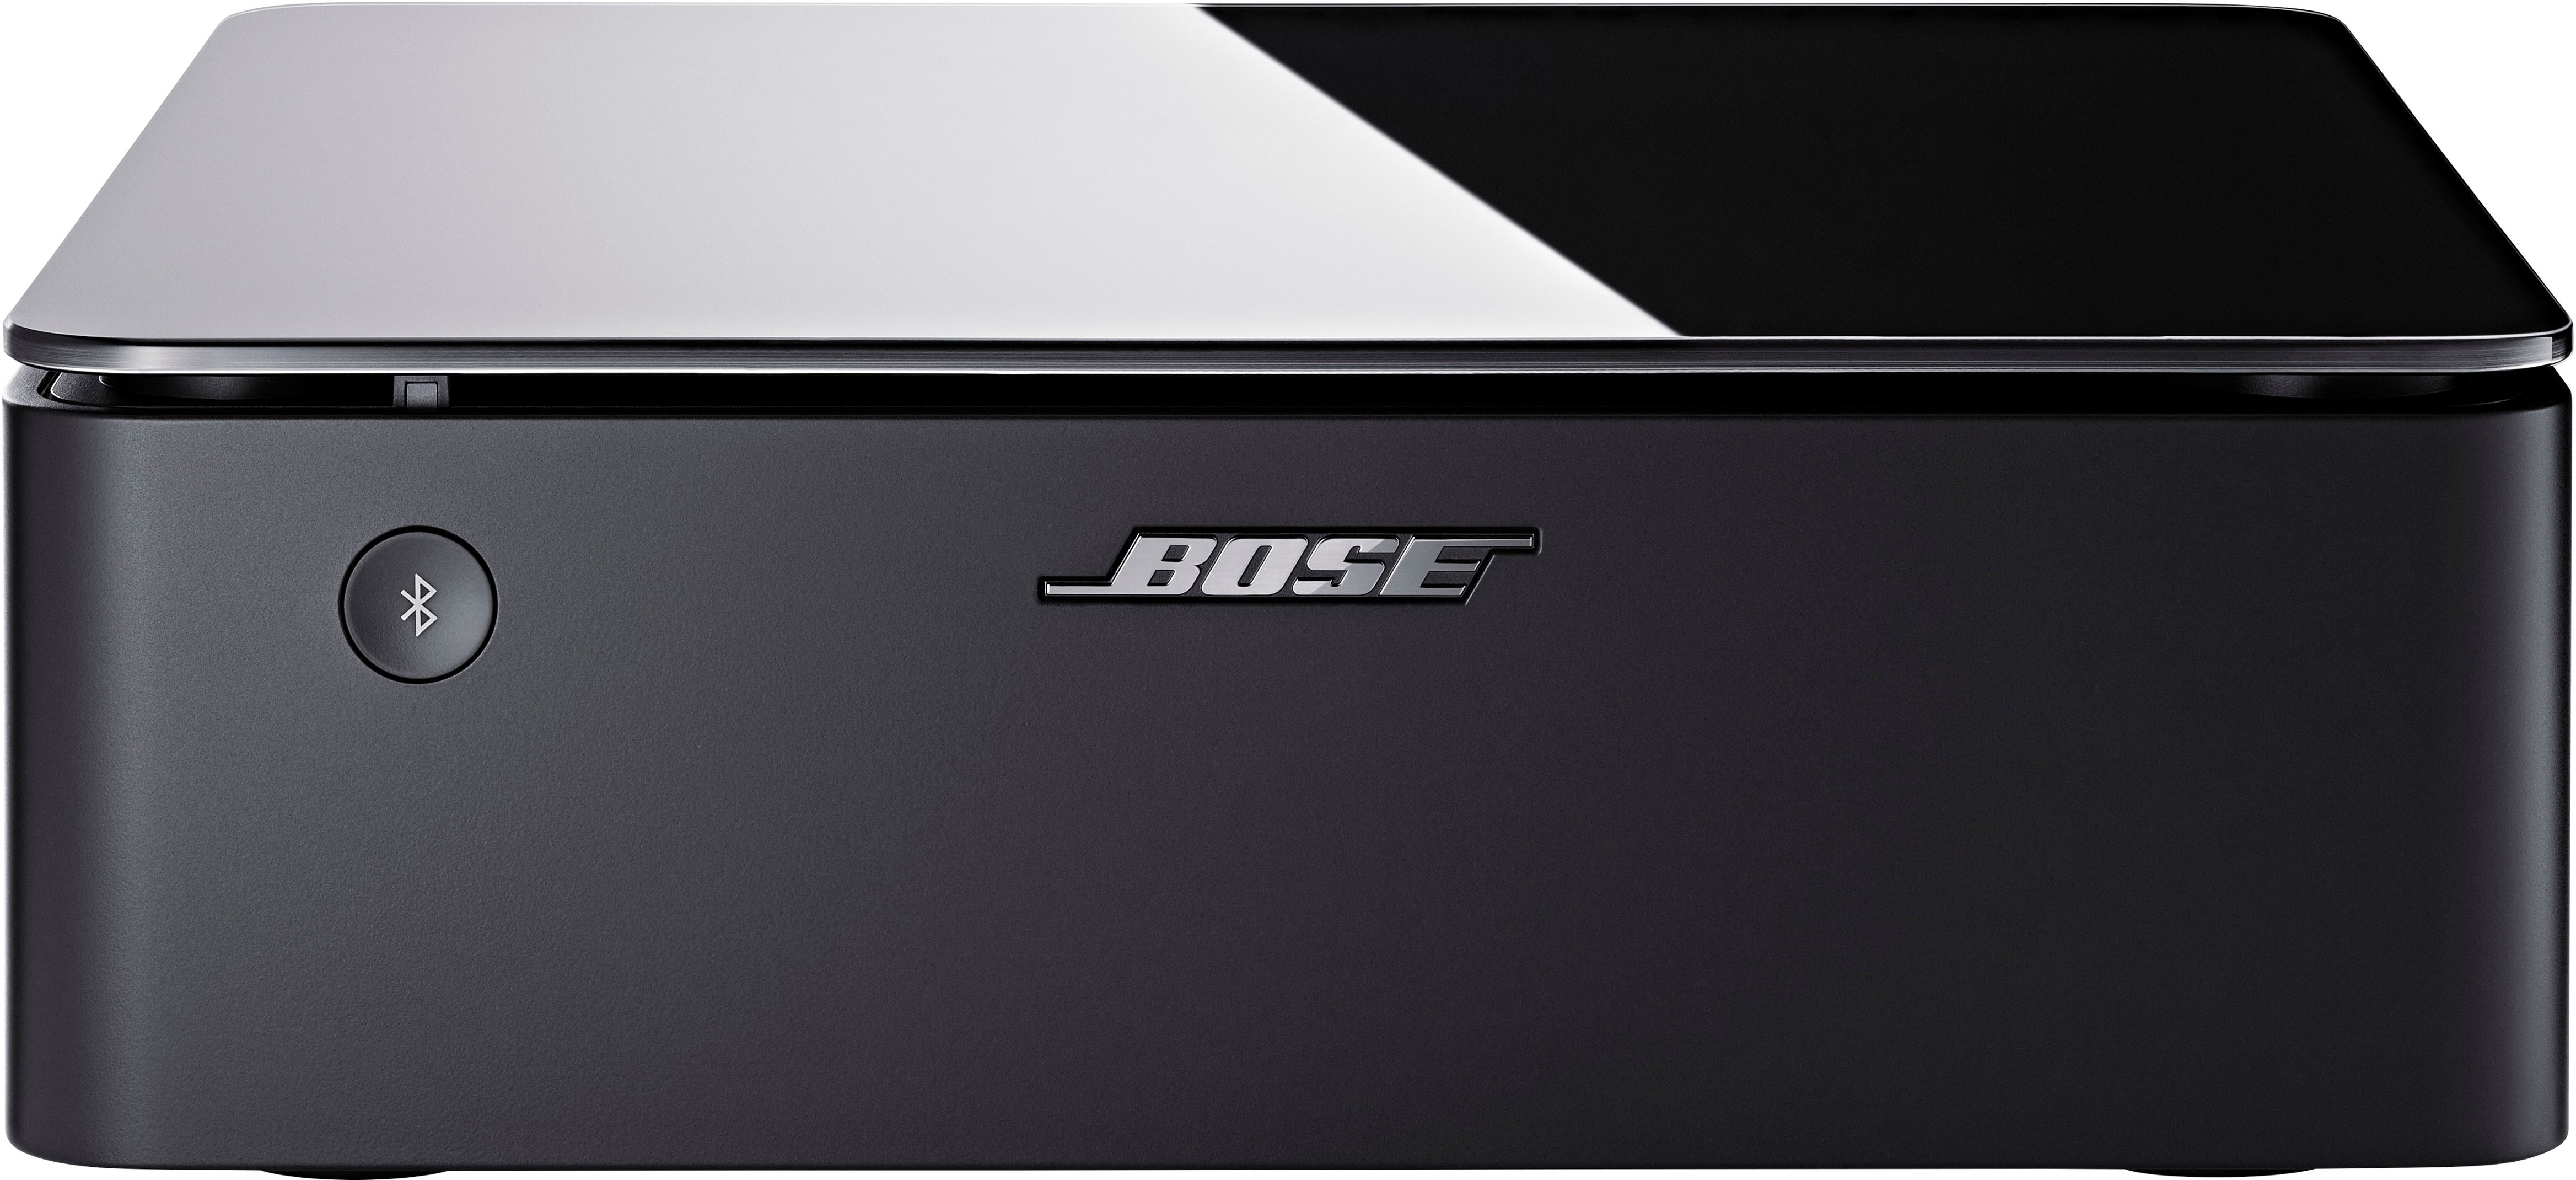 Bose - Music Amplifier - Black